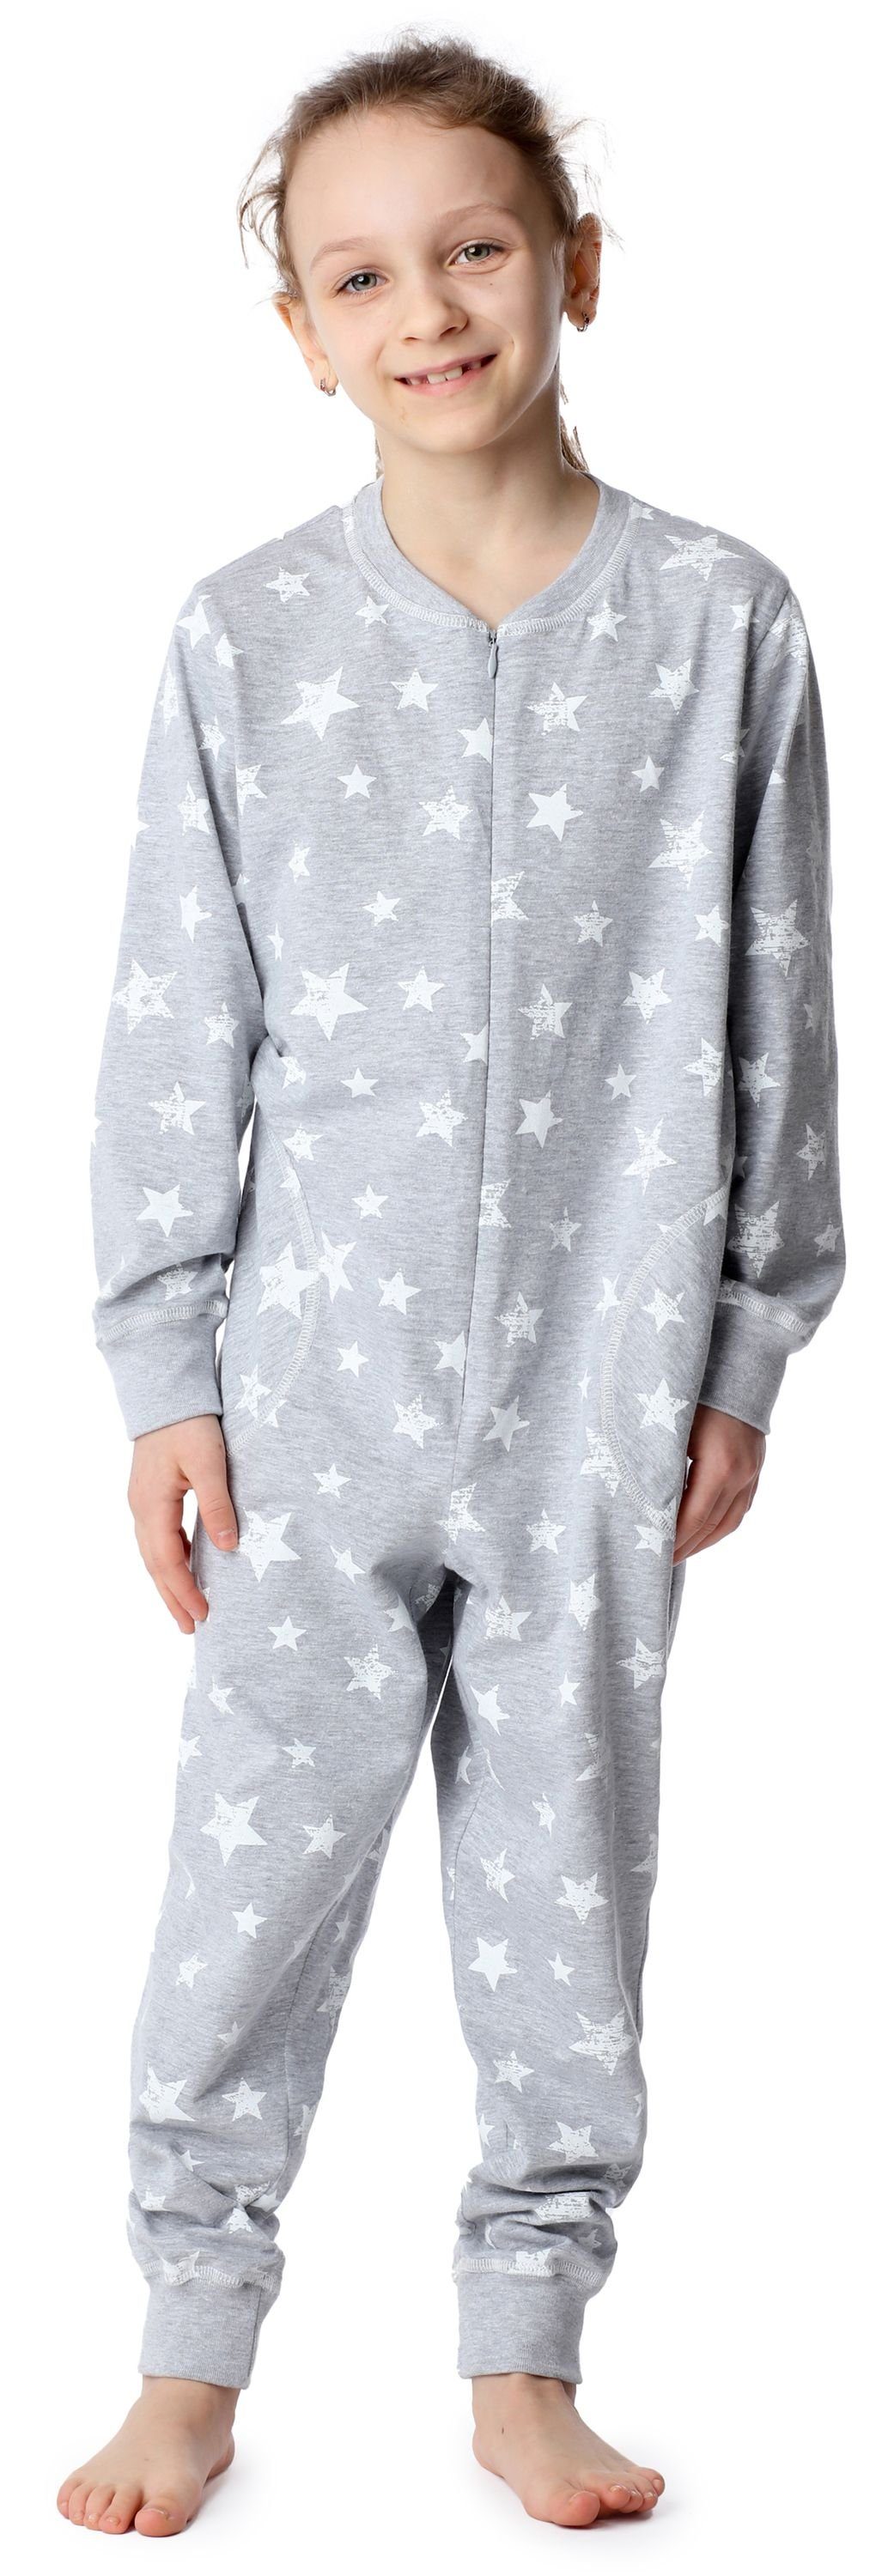 Merry Style Schlafanzug Mädchen Schlafanzug Jumpsuit MS10-186 Melange Ecru Sterne